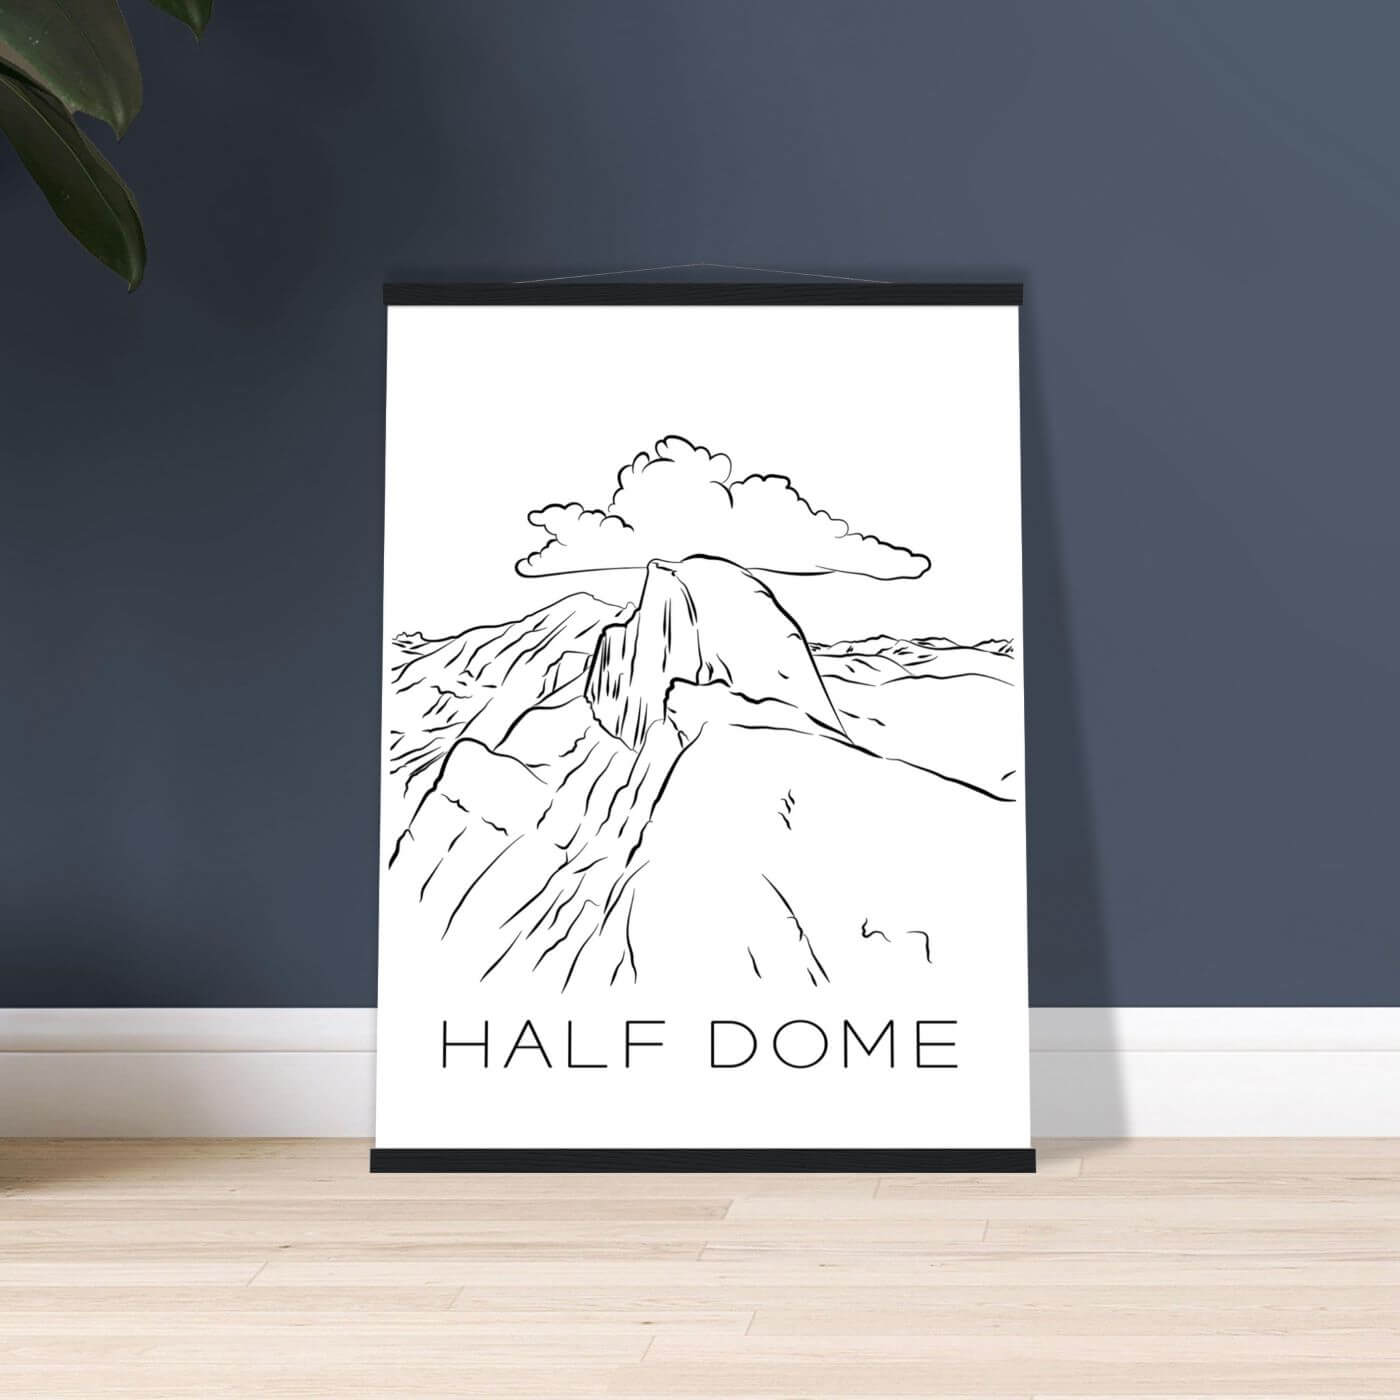 Half Dome - Black & White